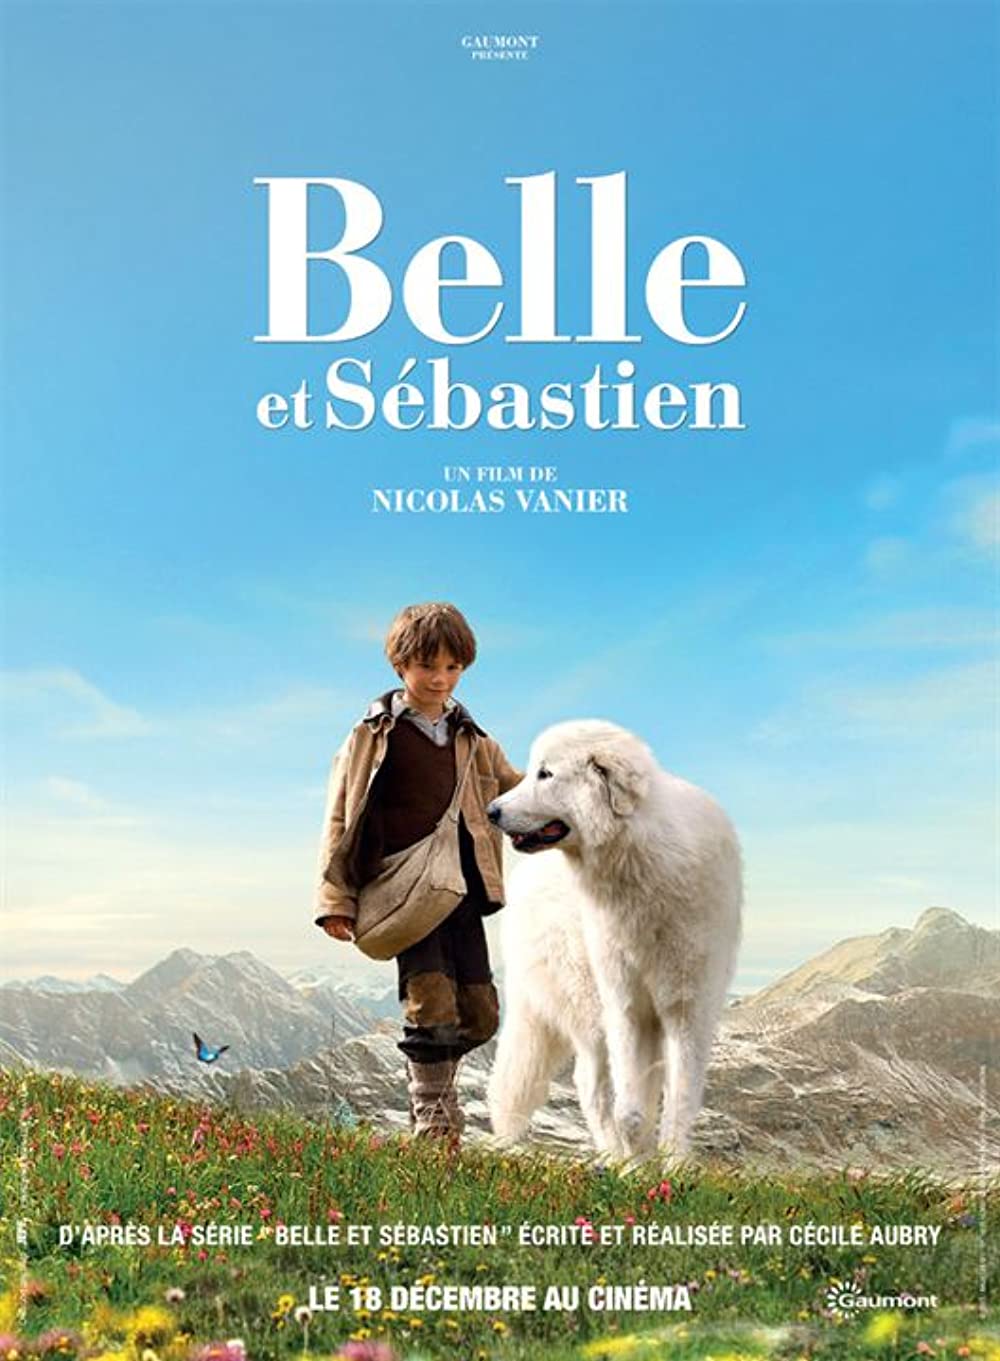 ดูหนังออนไลน์ฟรี Belle And Sebastian (2013) เบลและเซบาสเตียน เพื่อนรักผจญภัย